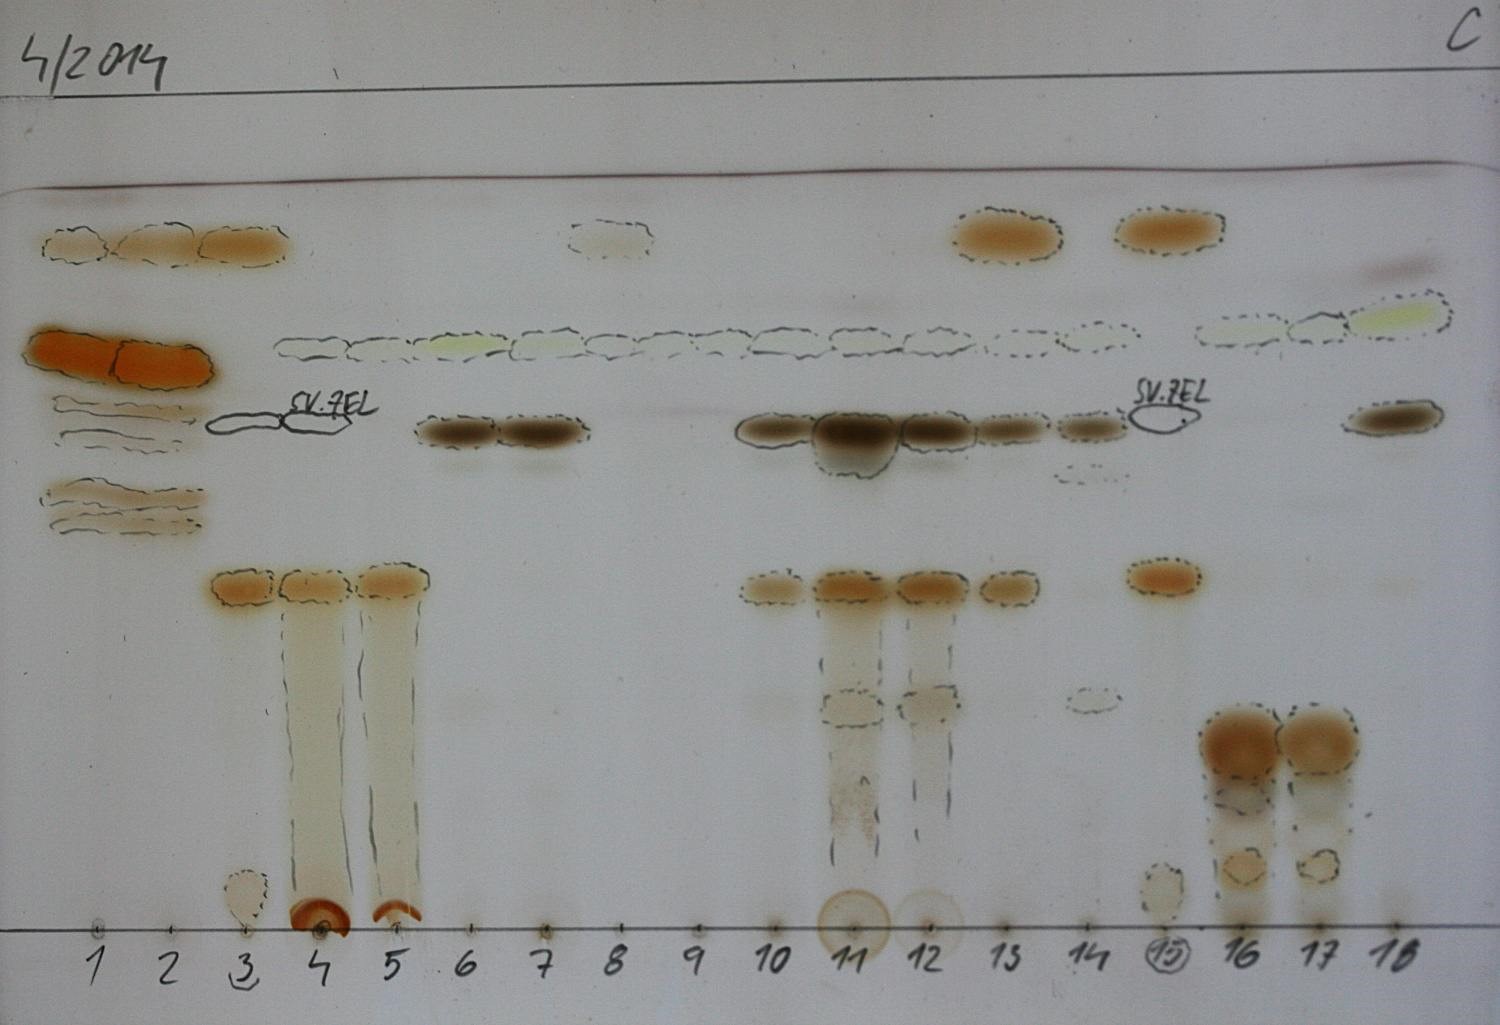 TLC deska – ukázka rozložení sekundárních metabolitů podle velikosti molekul na chromatografické desce (zdroj: Národní muzeum)